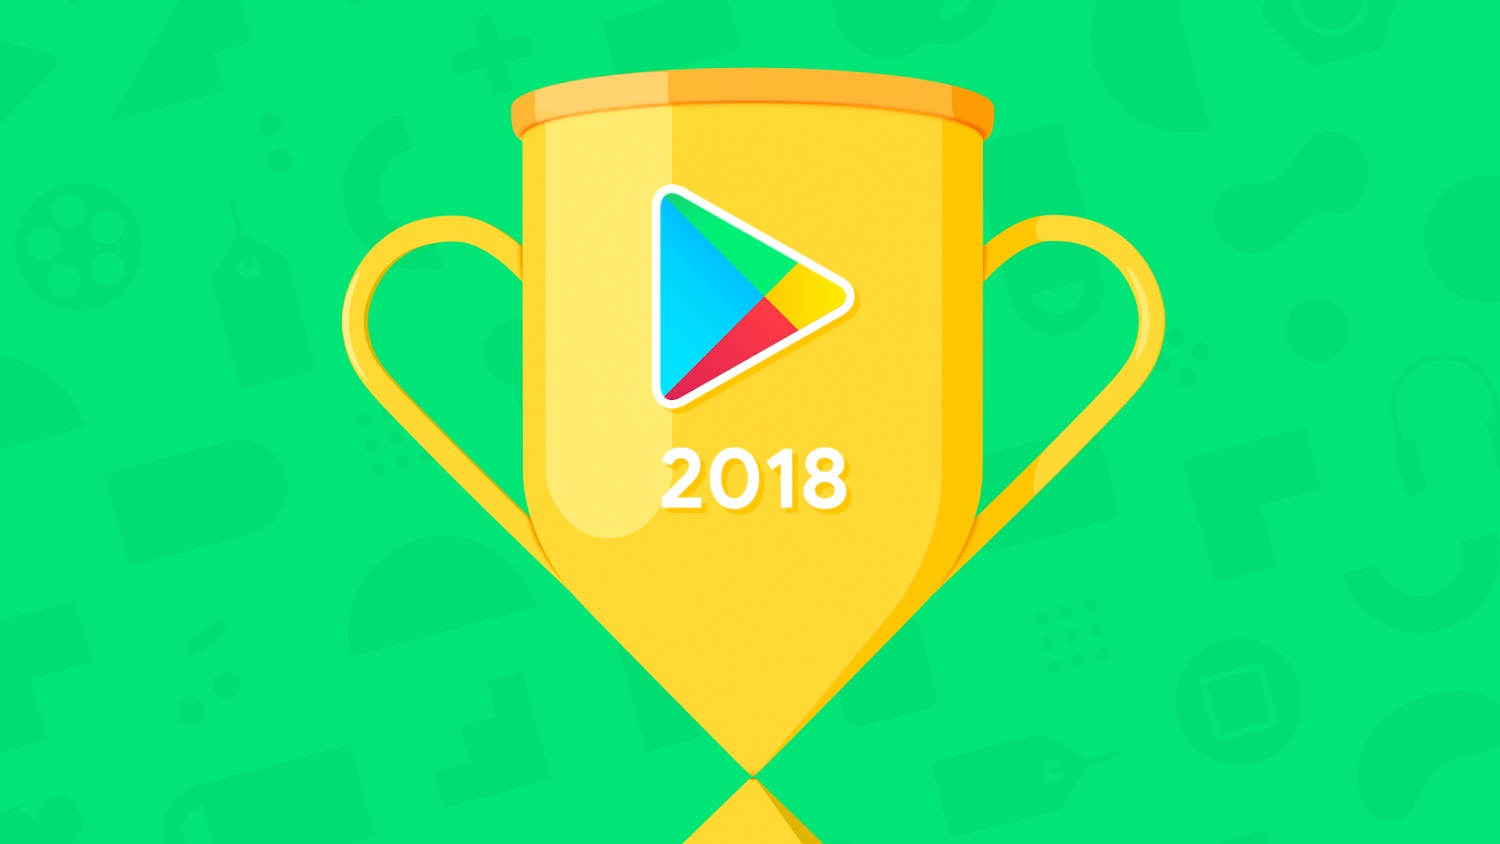 Google divulga os melhores apps e jogos da Play Store em 2022